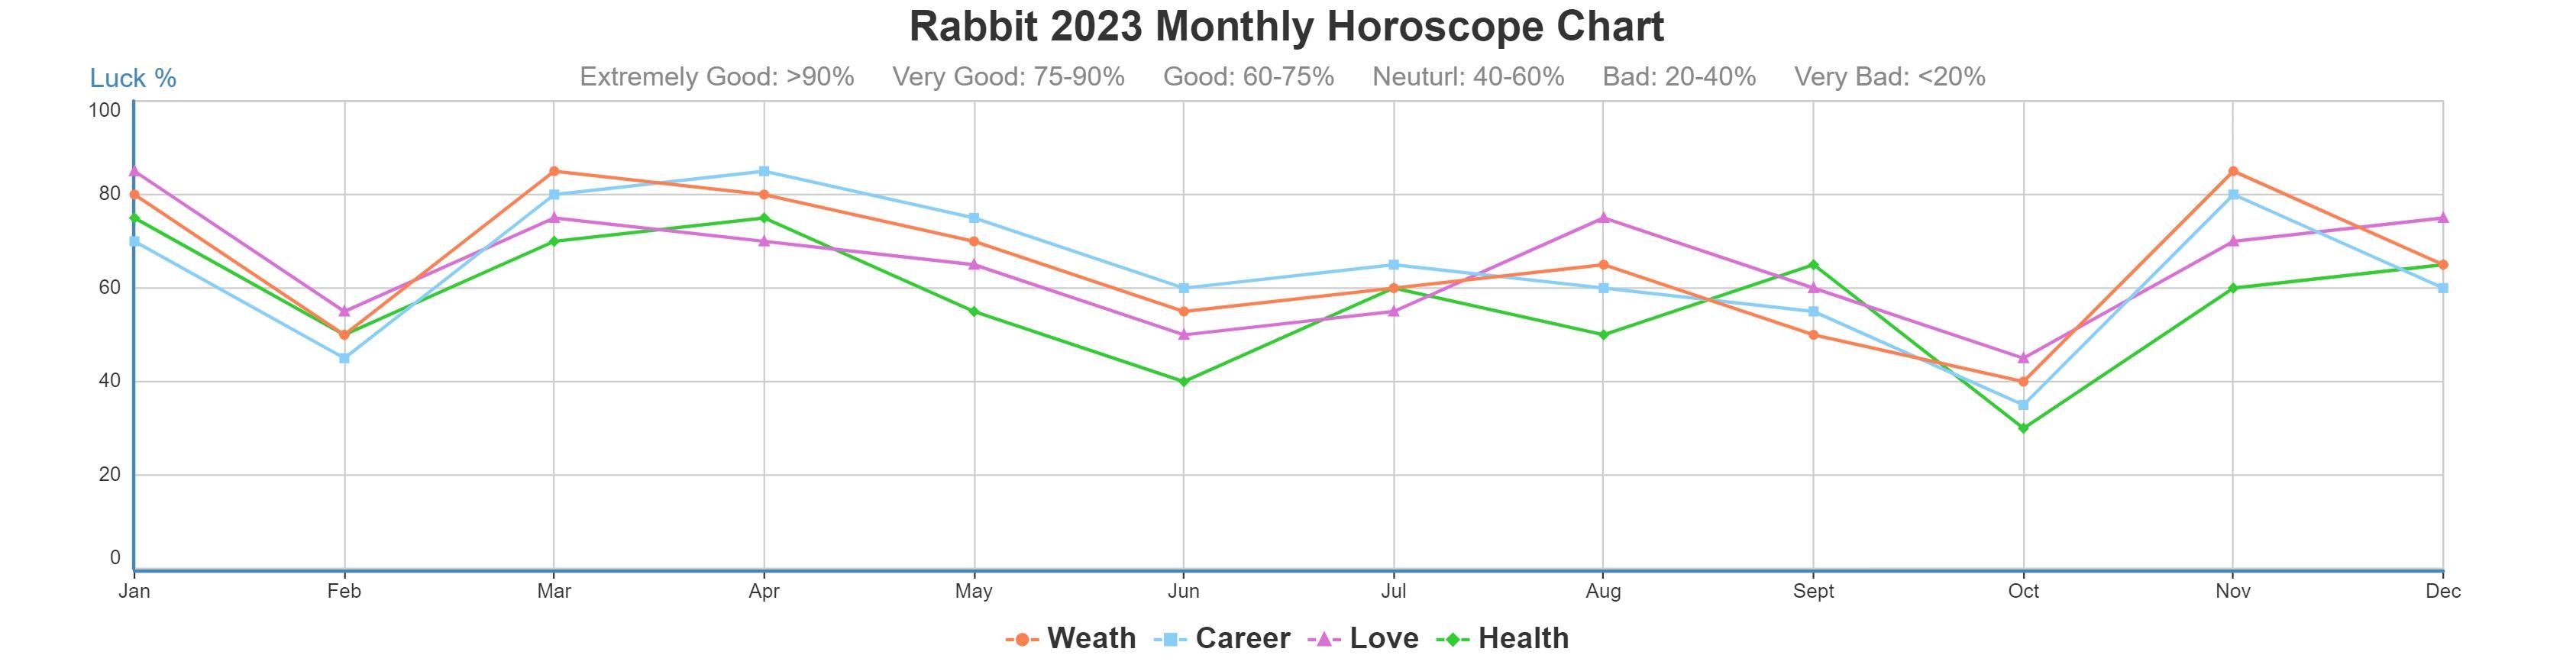 Rabbit 2023 monthly horoscope